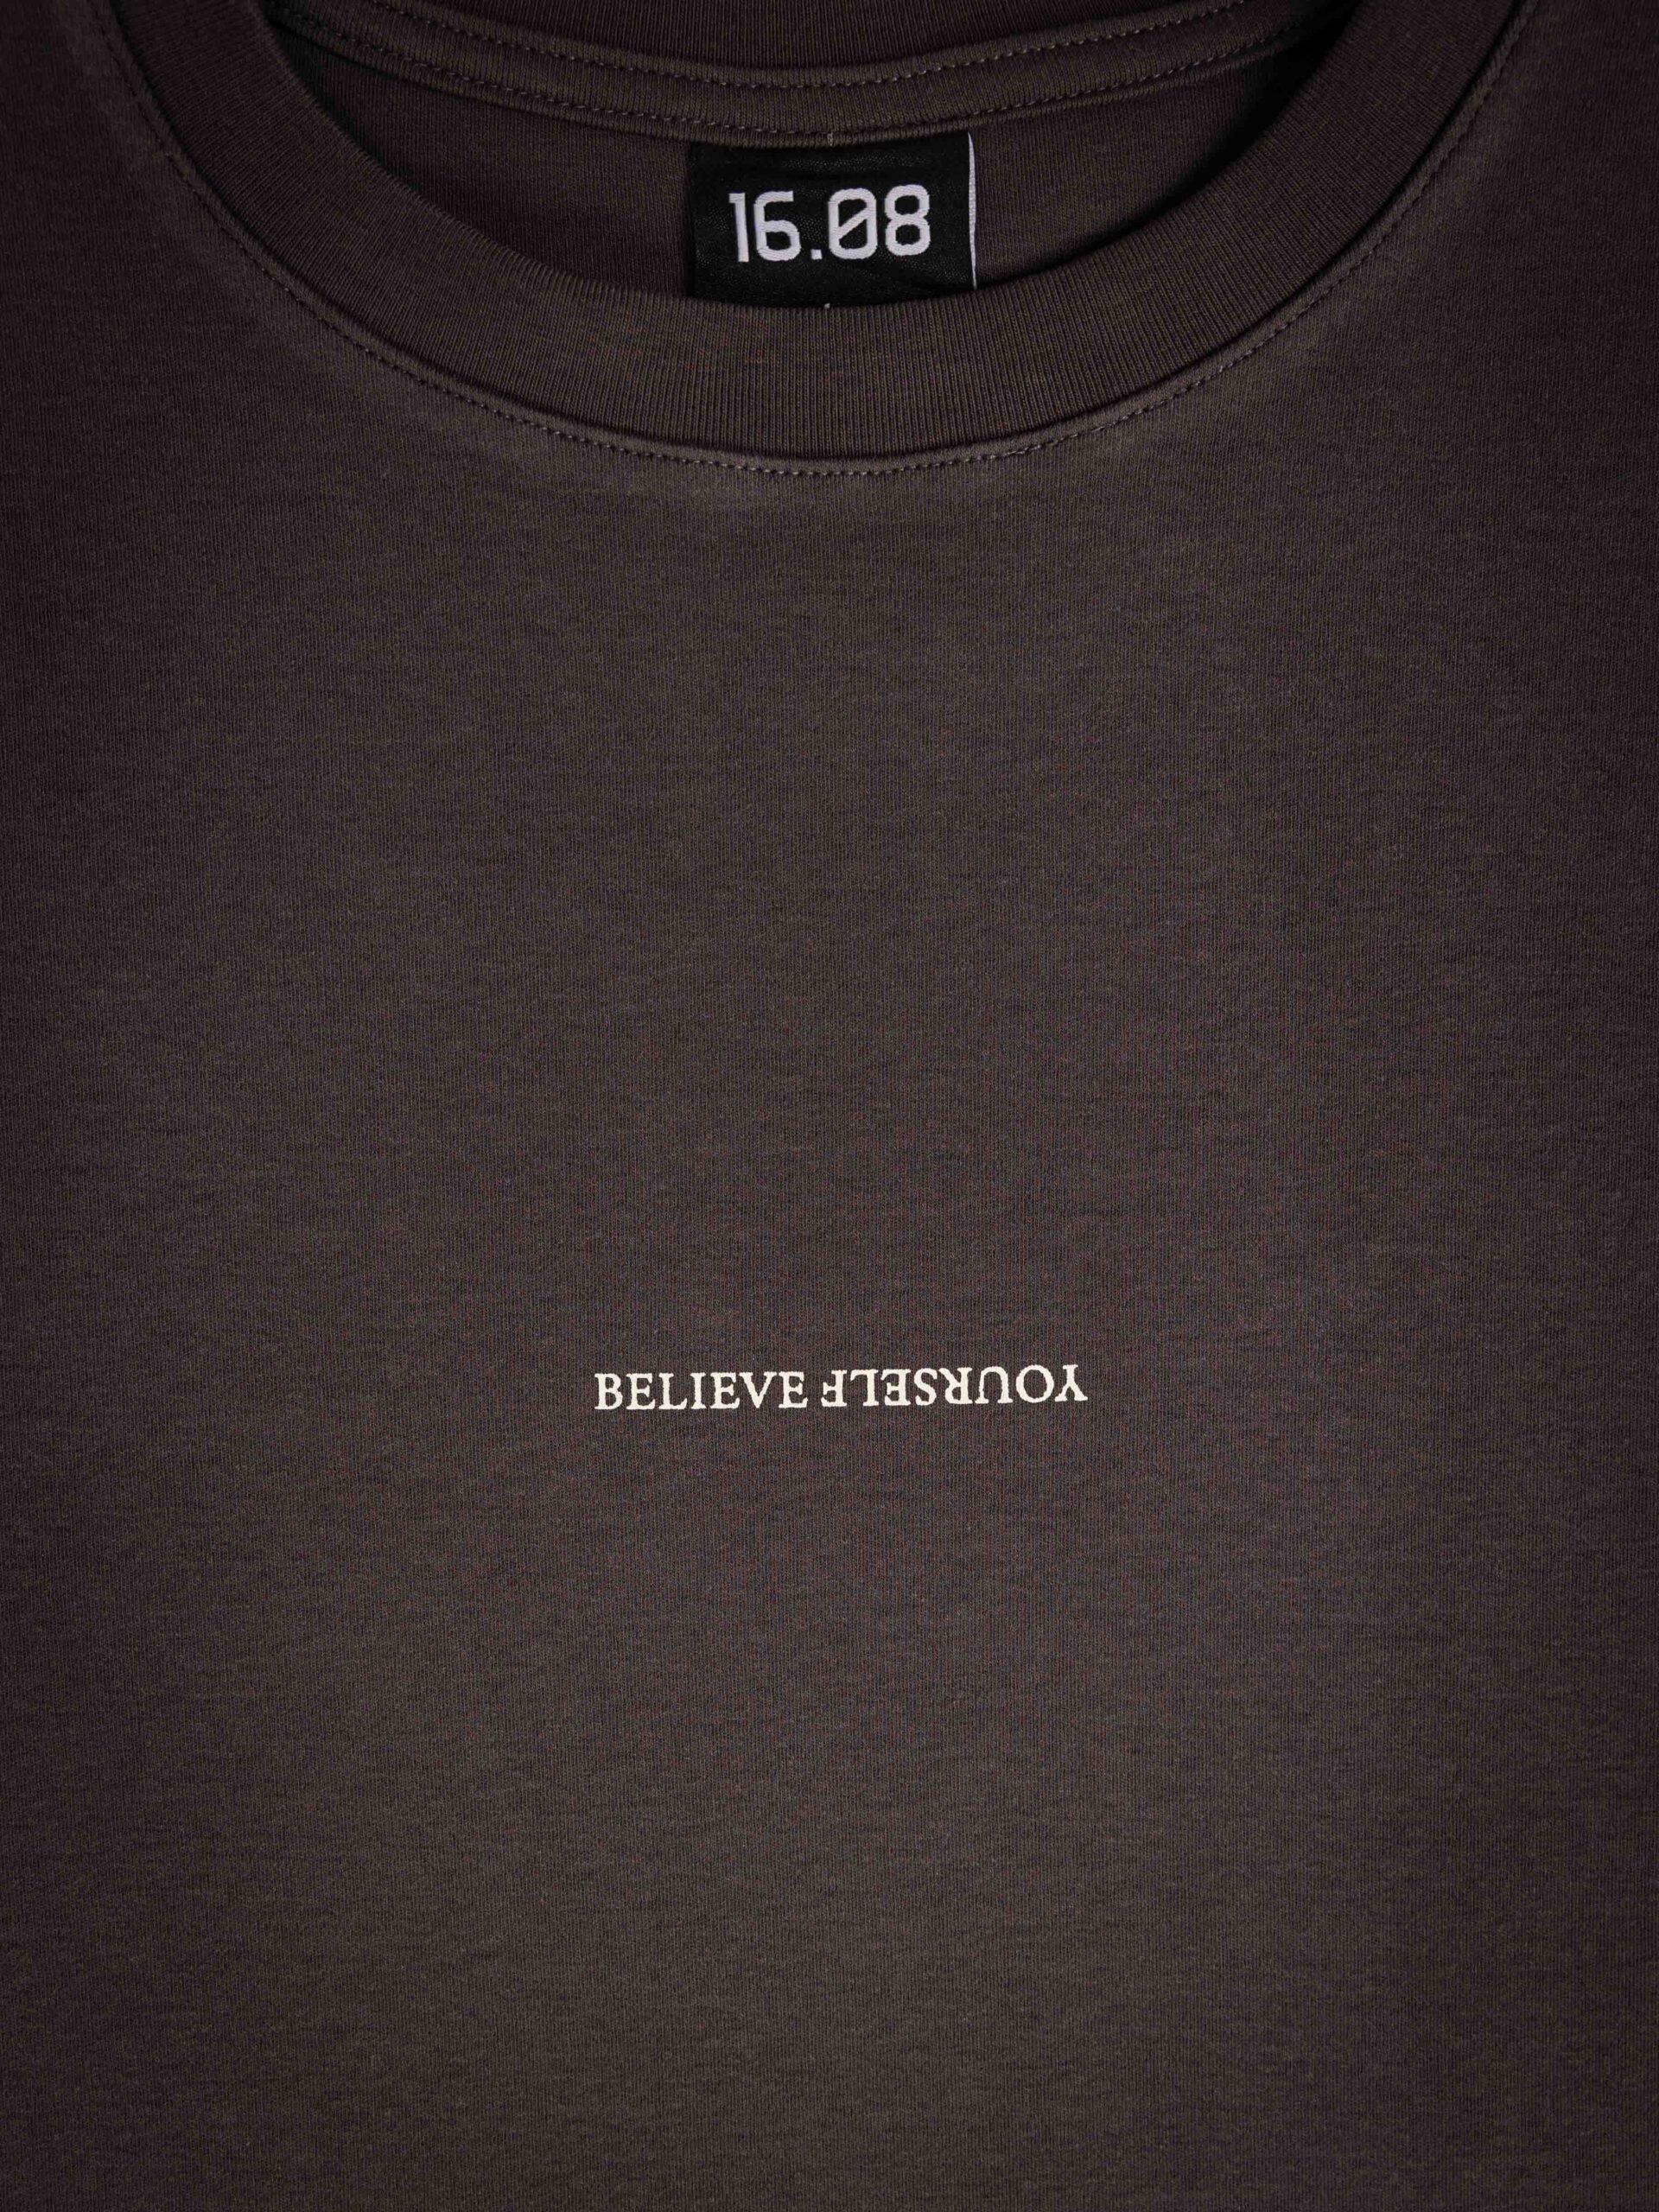 Offblack Believe Oversized T-shirt 1608 WEAR